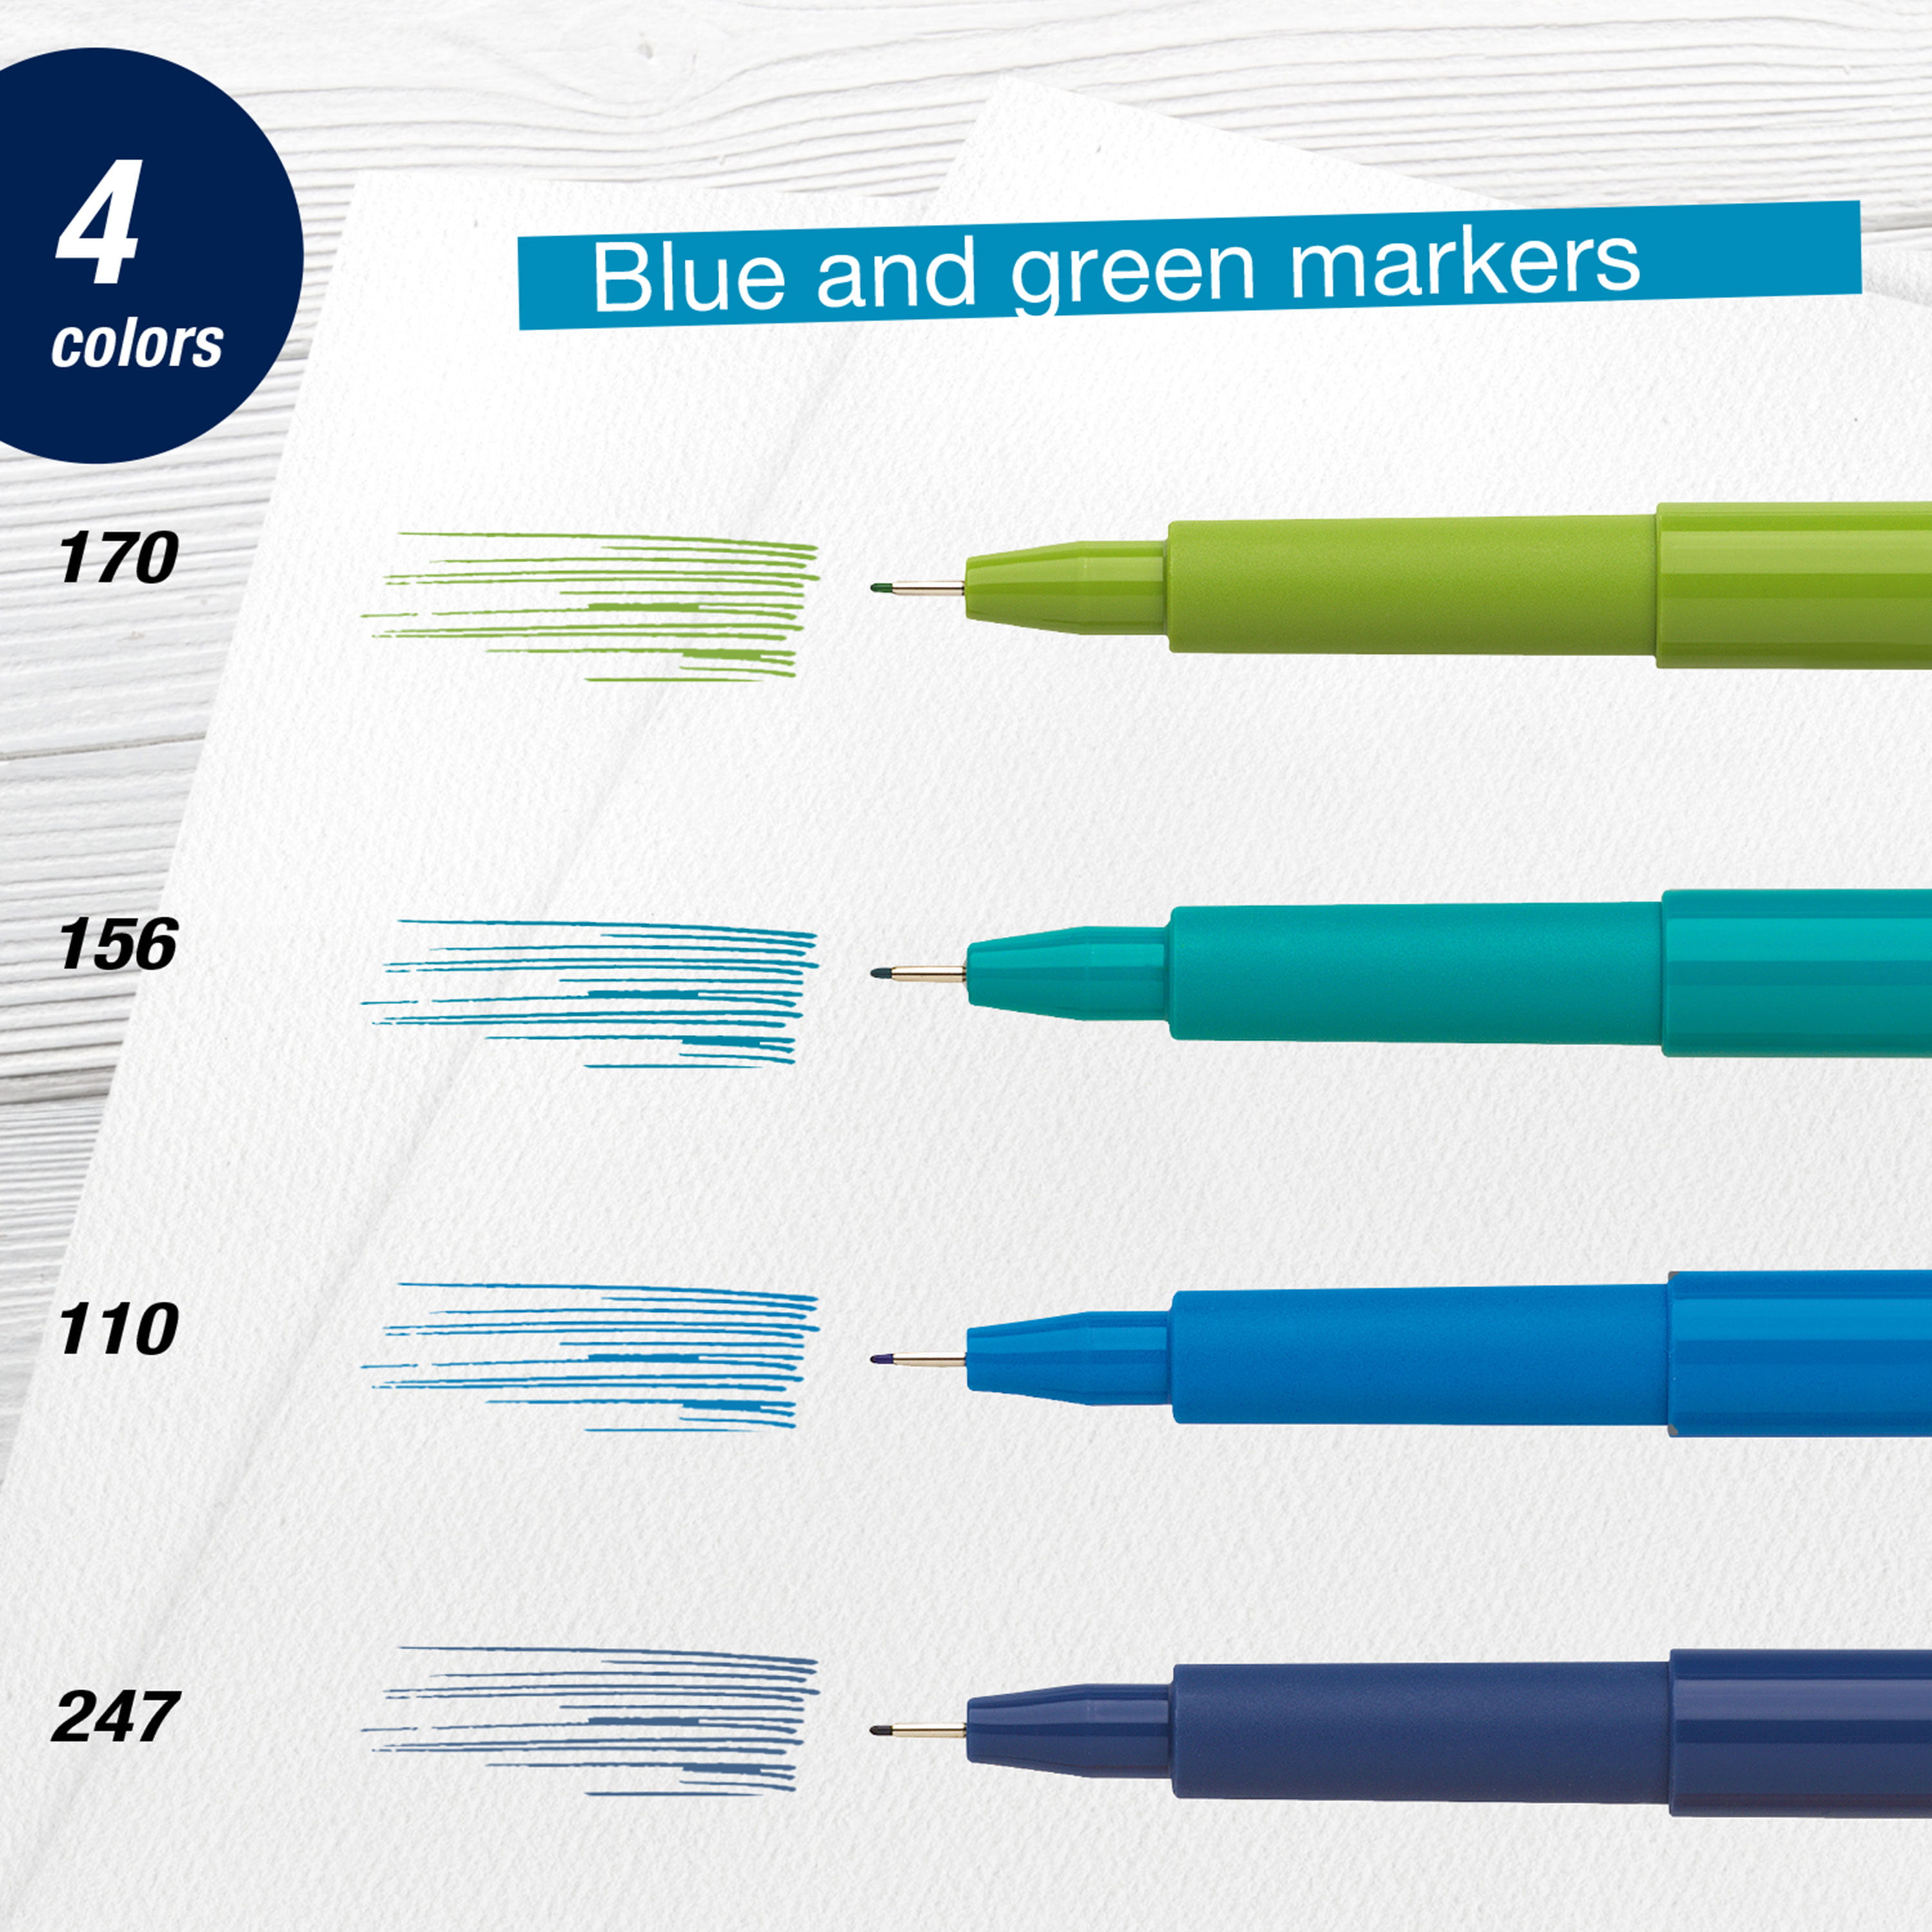 Faber-Castell Pitt Artist Pen® Lettering Set Blue- Adult Artists (Beginners  to Experts) 